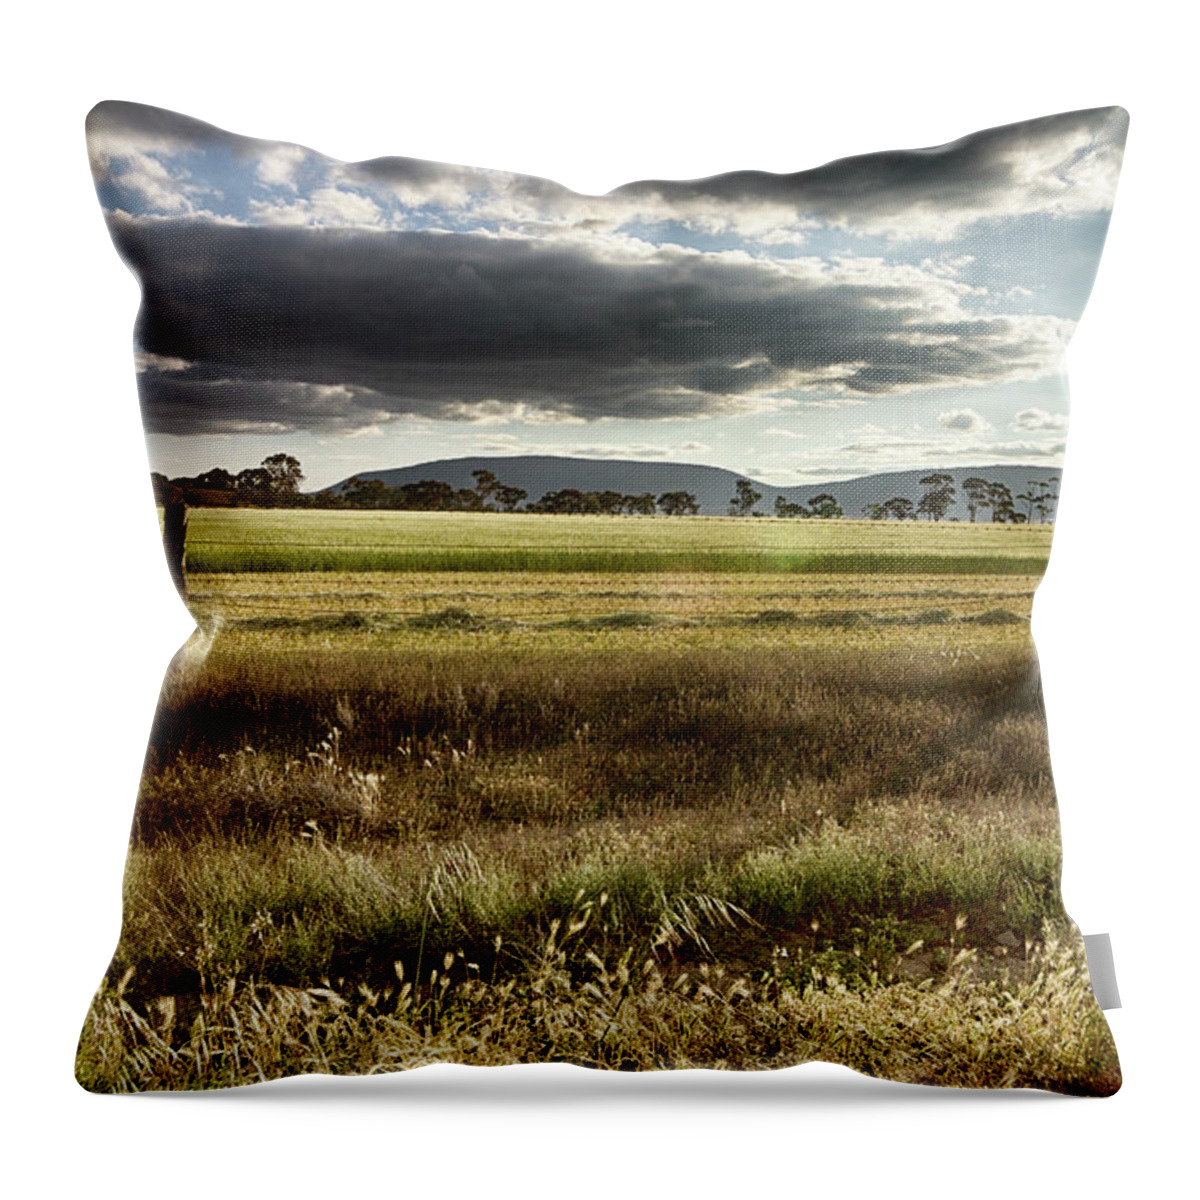 Green Throw Pillow featuring the photograph Green Fields 6 by Douglas Barnard